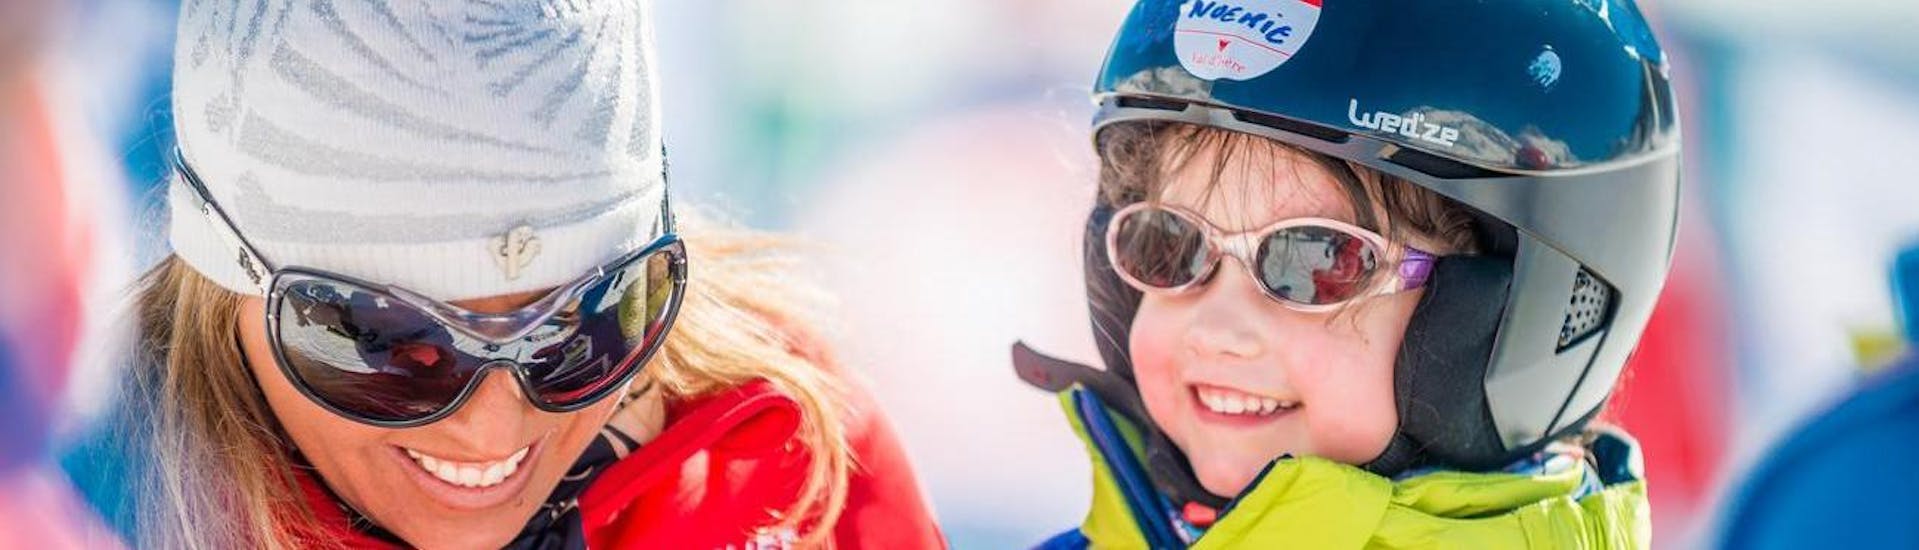 Un jeune enfant apprend à skier pendant son Cours de ski Enfants "Jardin des Neiges" (4-5ans) - Débutant avec l'école de ski ESF Val d'Isère.